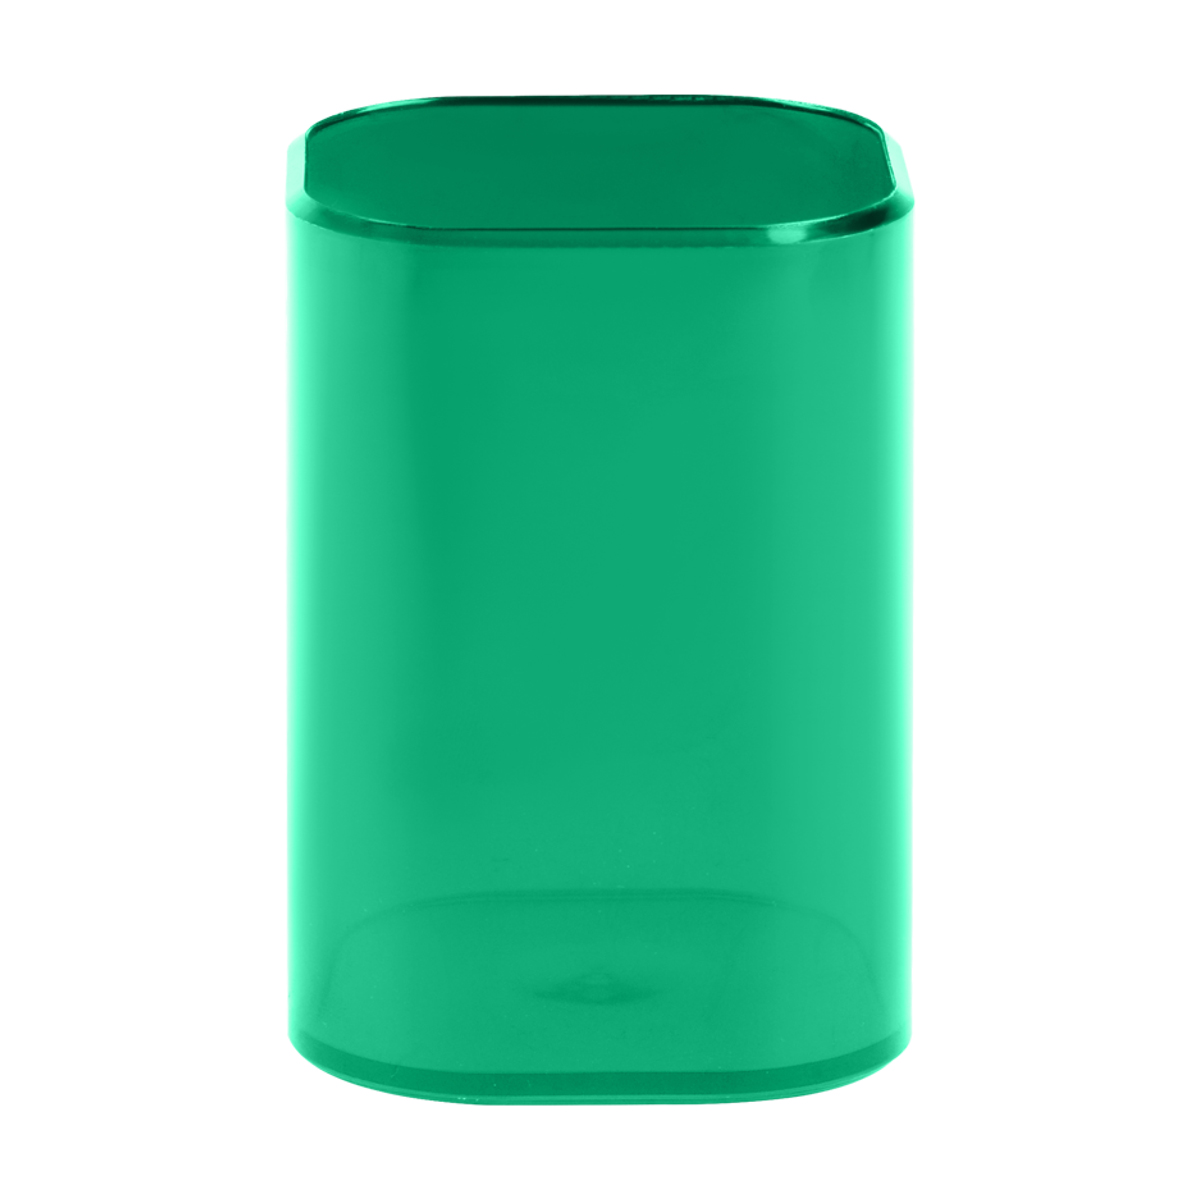 Подставка-стакан СТАММ "Фаворит", пластиковая, квадратная, тонированная зеленая